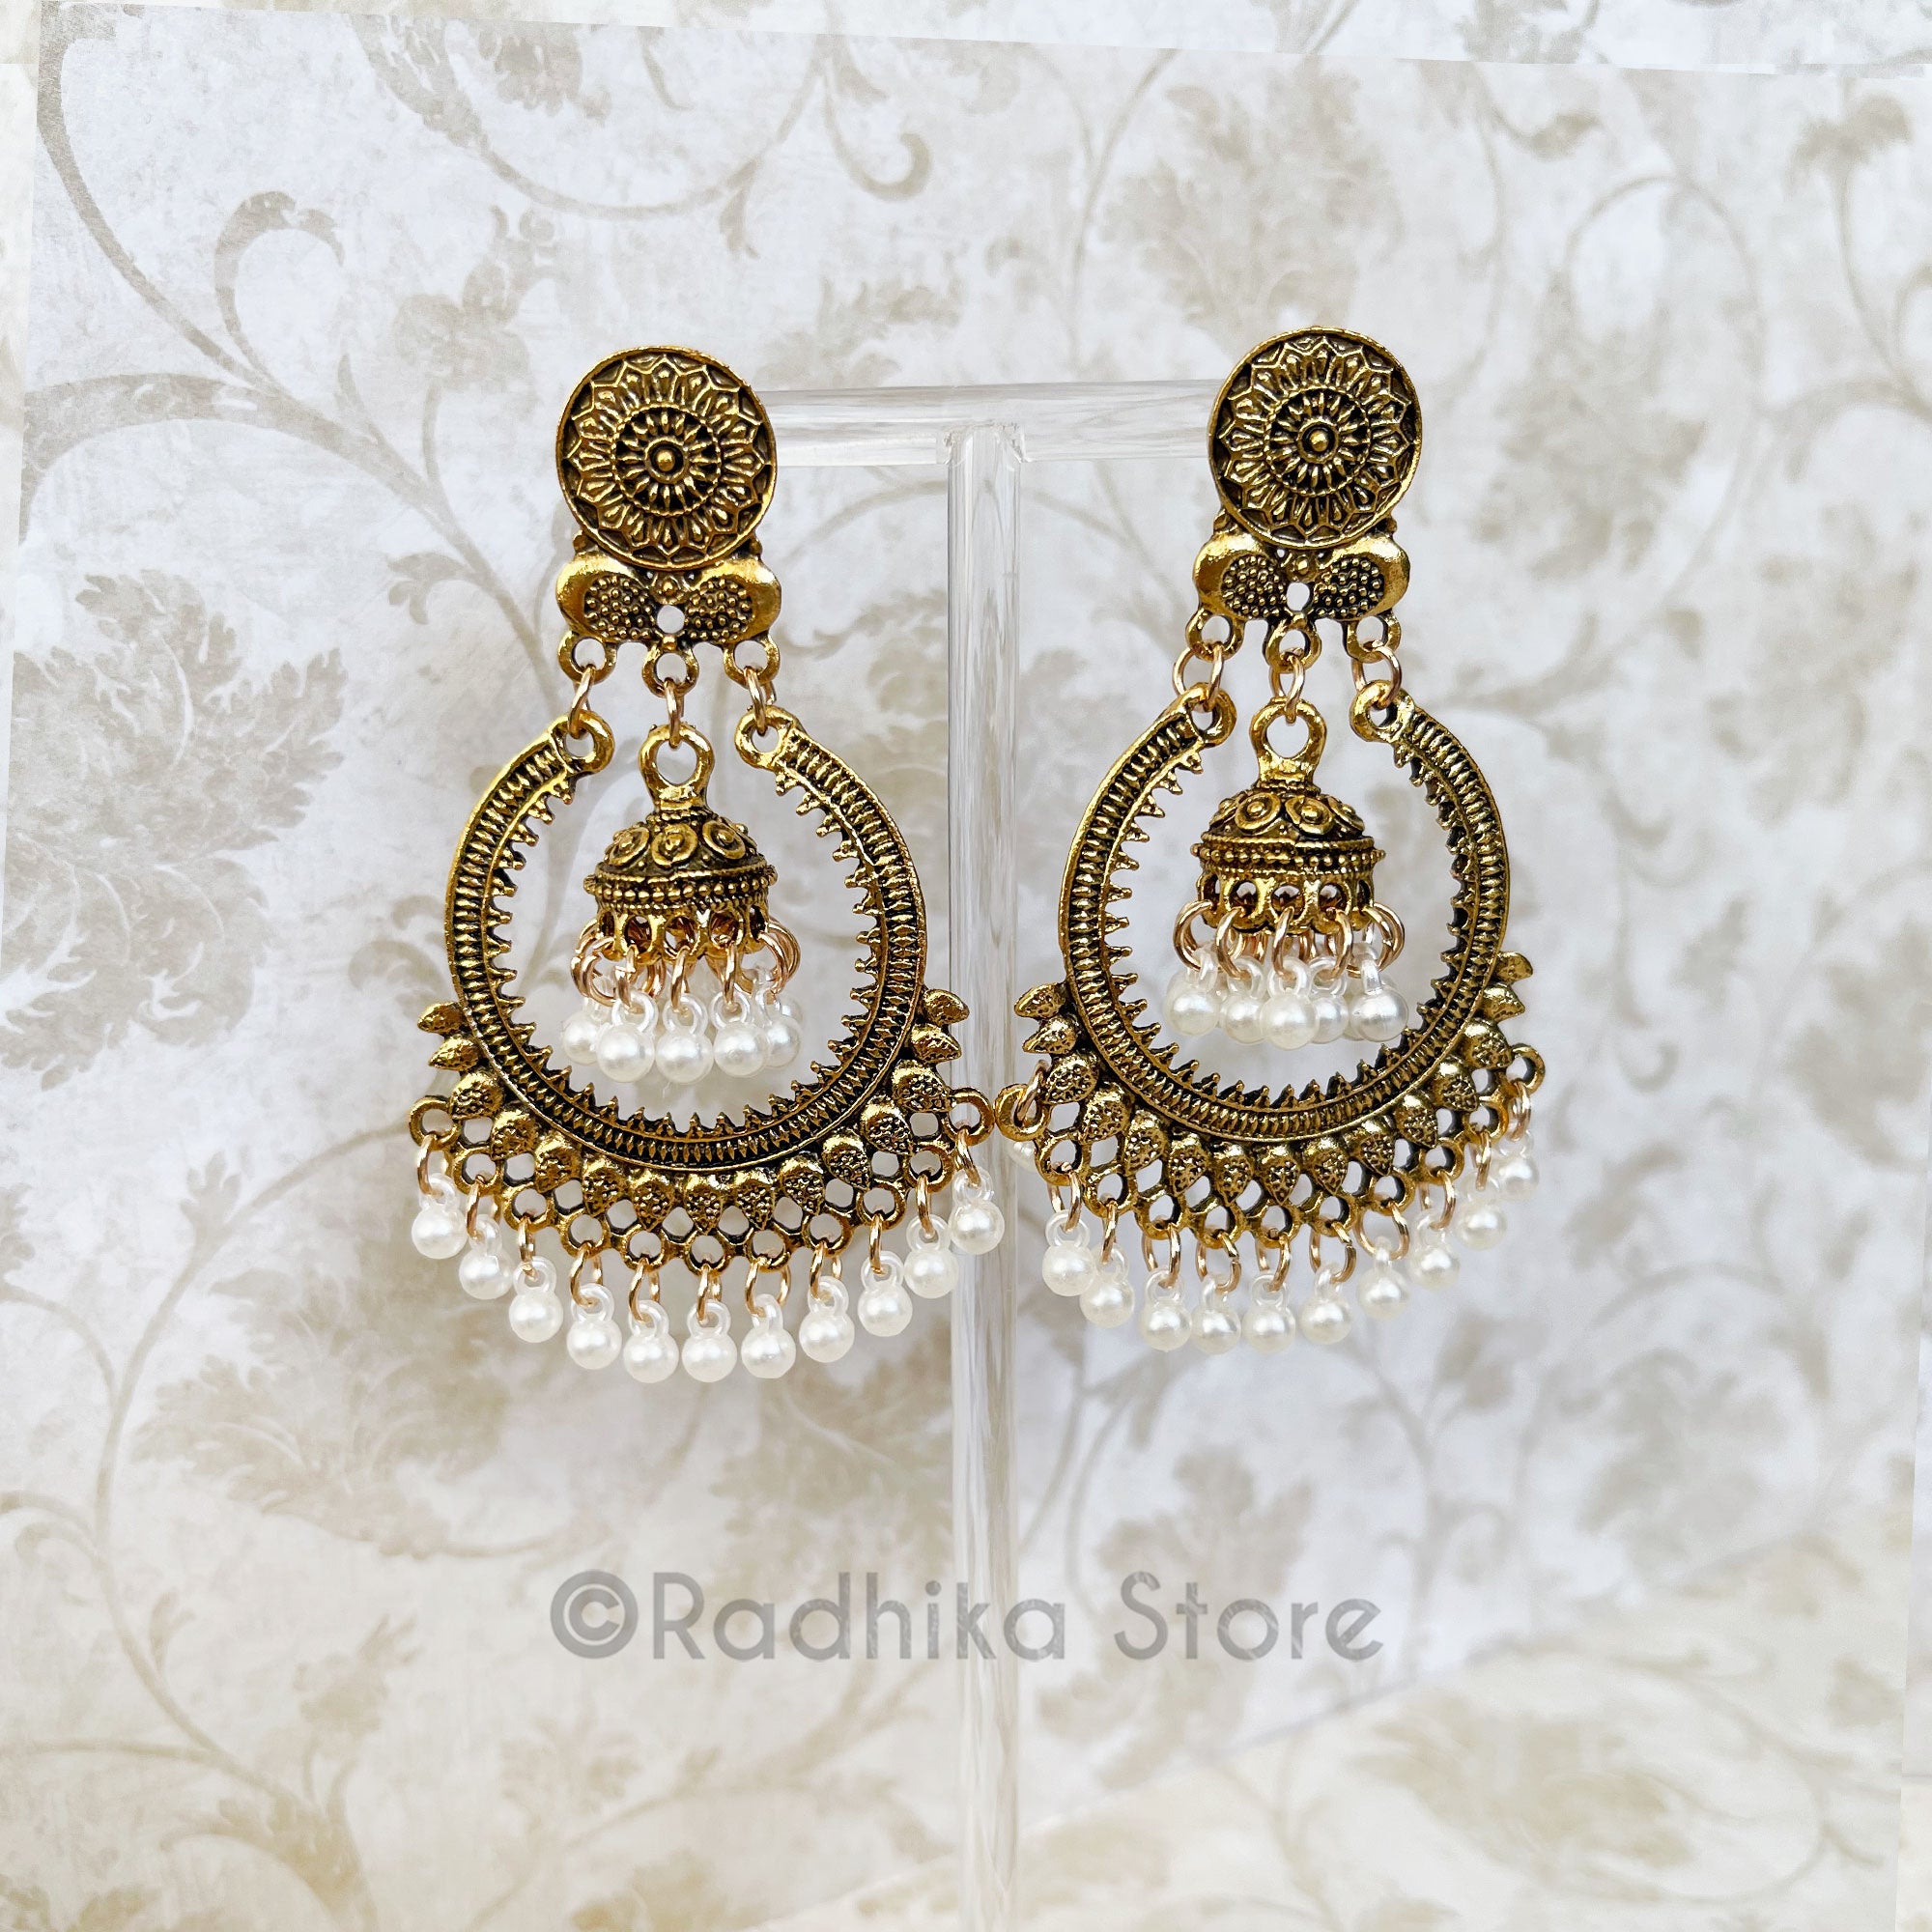 Sabyasaachi Chandbali Earrings, Polki Stone Big Jhumka Earrings, Indian  Bollywood Deepika Padukone in Designer Sabyasachi Bridal Chaandbali - Etsy  Israel